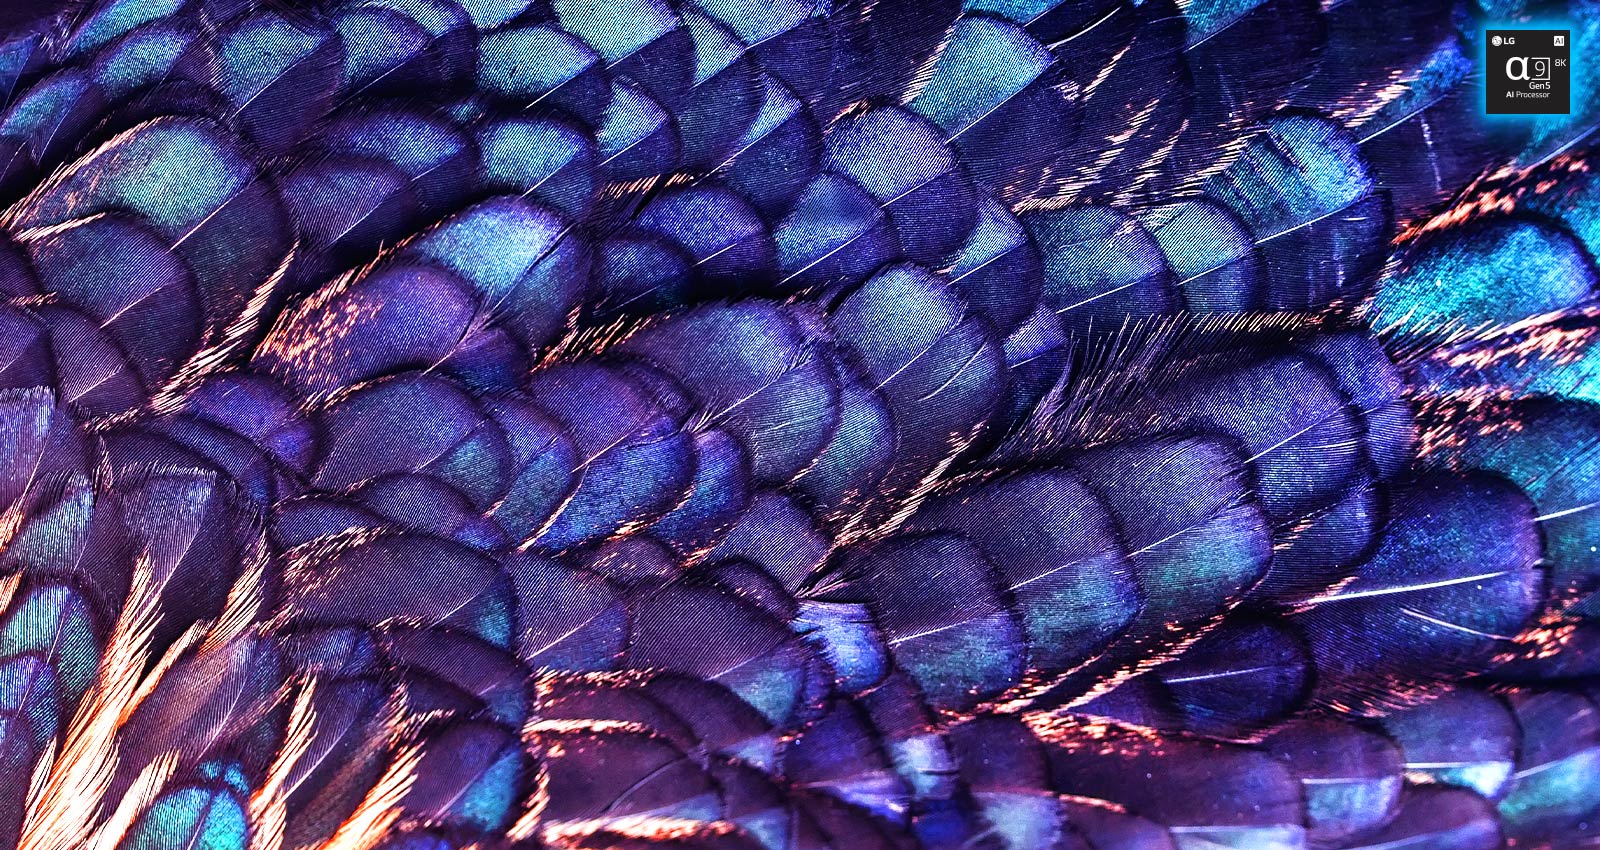 Slika tekstura svijetlih pera ptice ljubičaste boje koja se prelijevaju. Slika se dijeli na dvije – gornji dio je živopisniji i na njemu piše „unaprjeđenje AI 8K”, a donji je dio bljeđi.